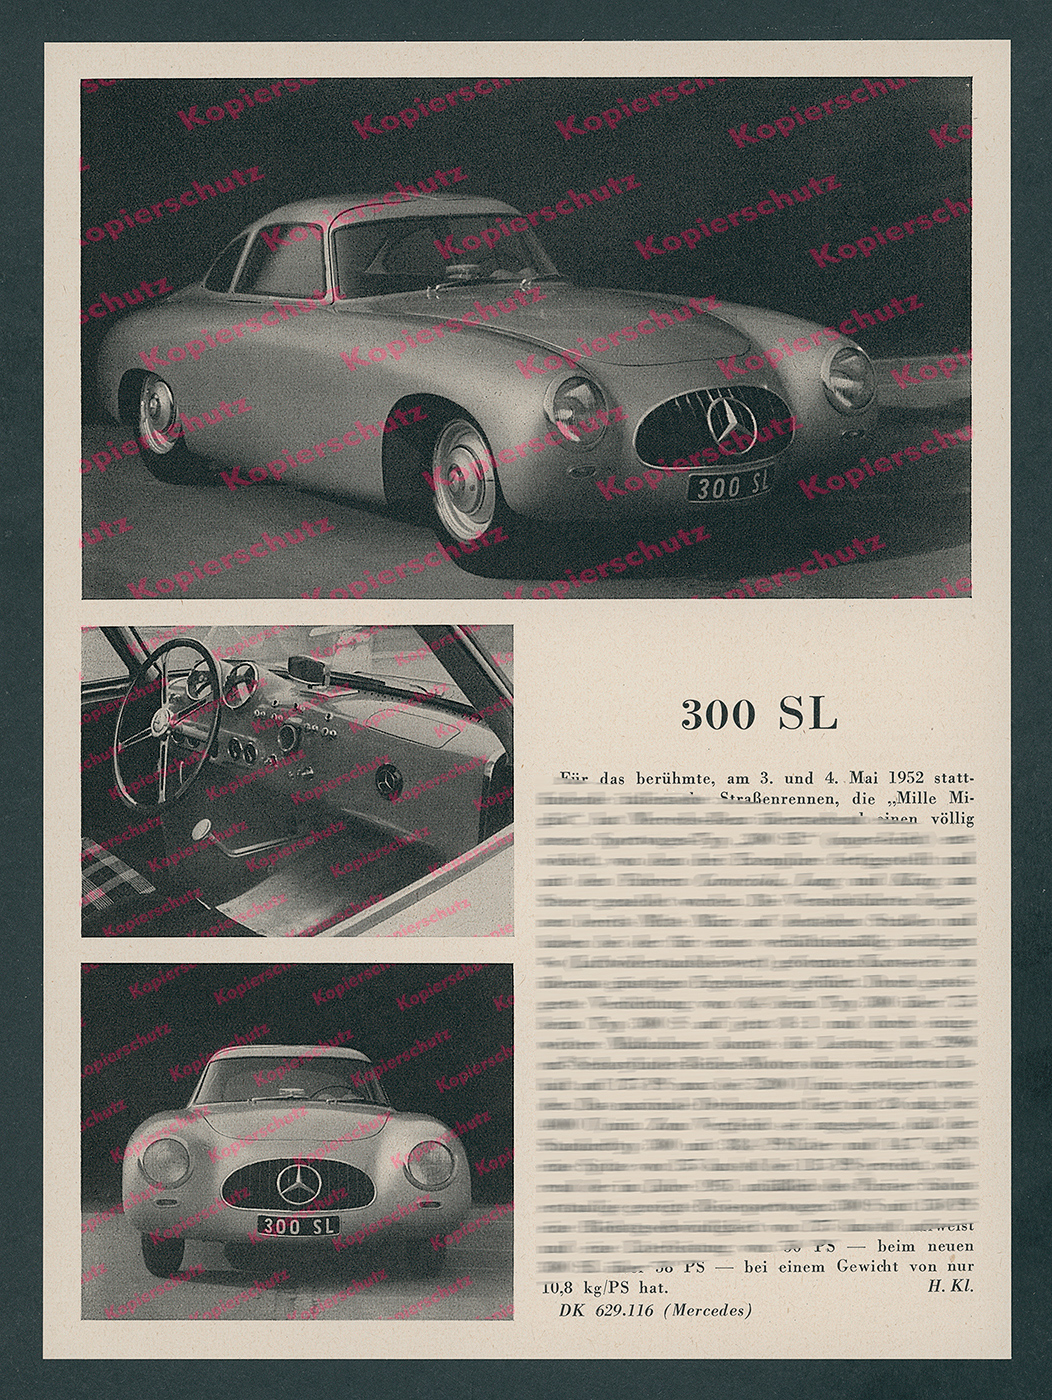 Mercedes Benz 300 Sl Prototyp Rennwagen Mille Miglia Uhlenhaut Silberpfeile 1952 Ebay